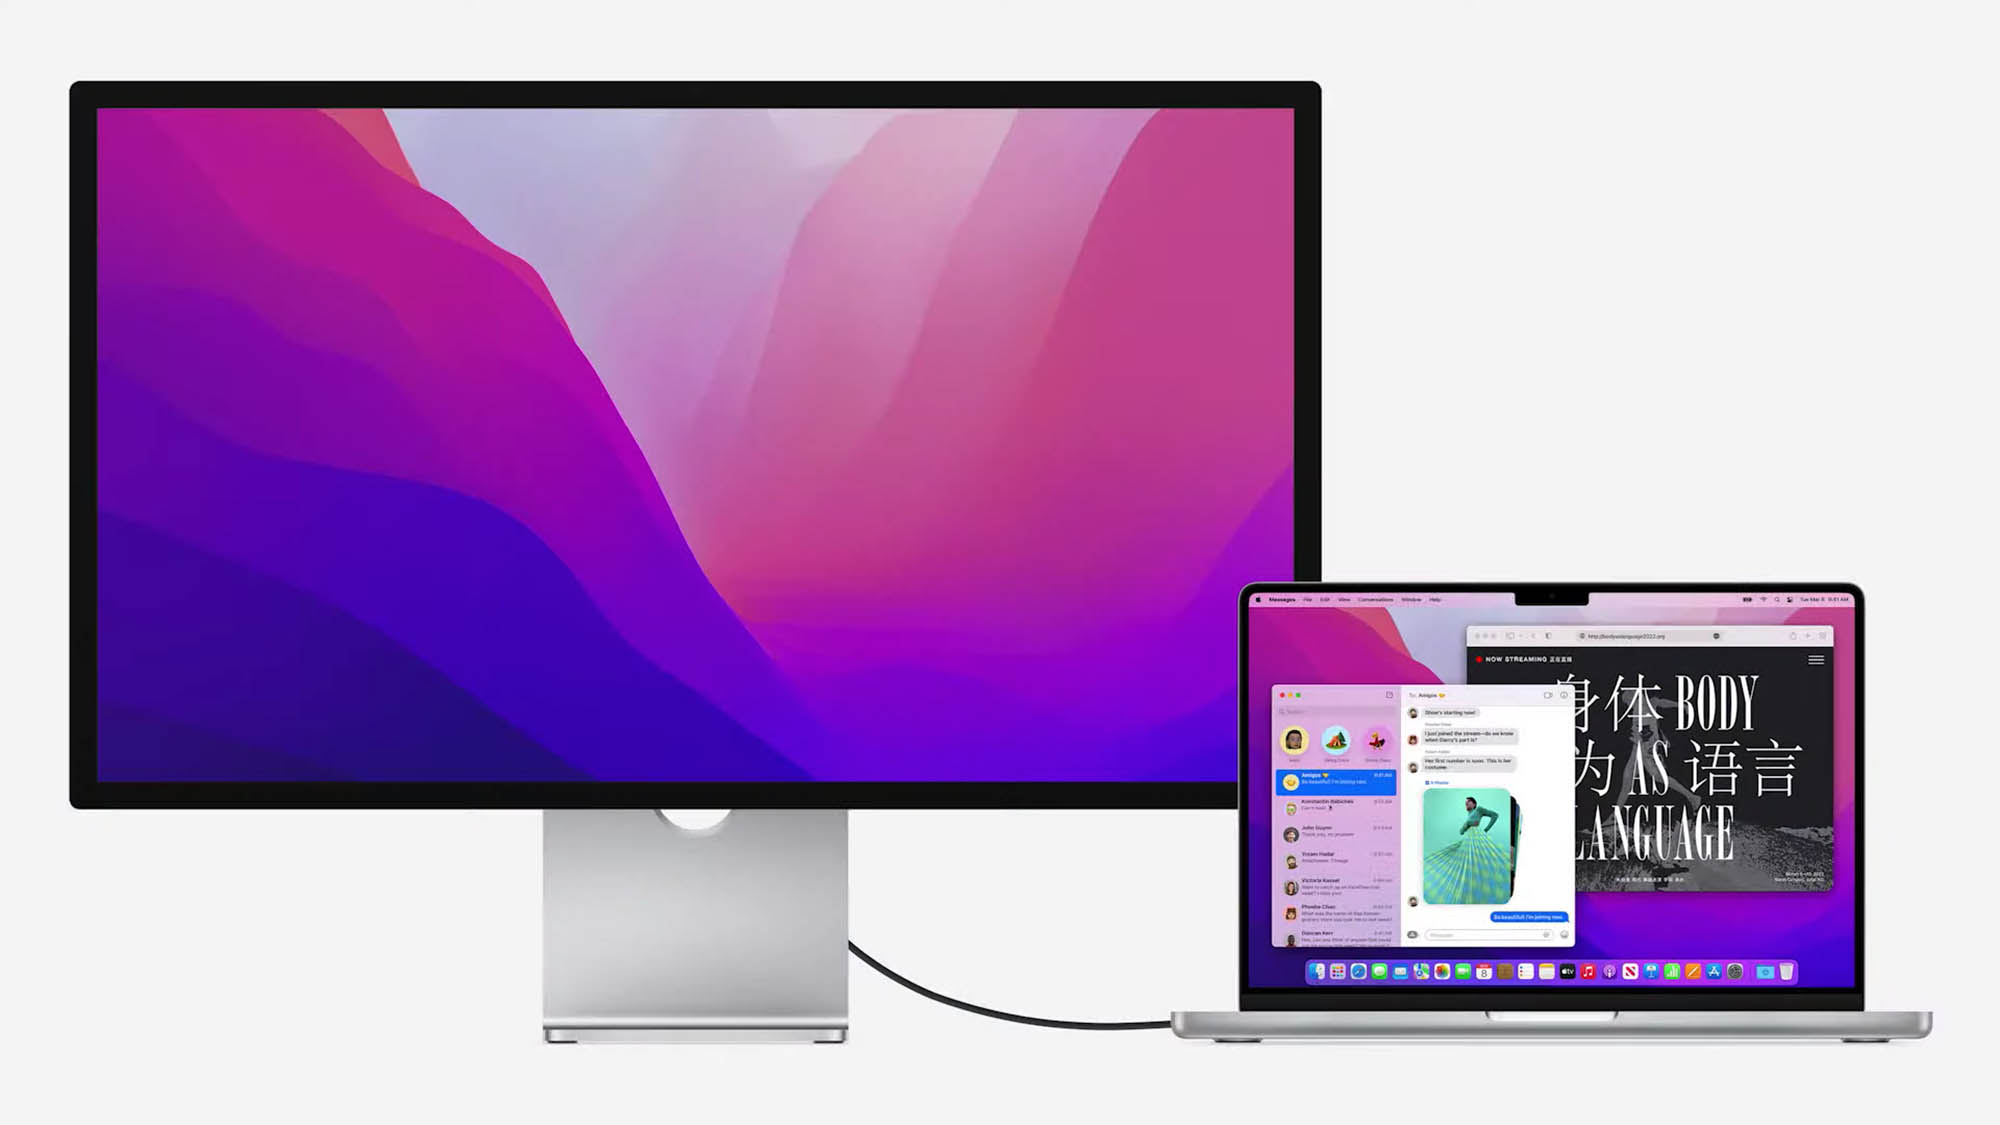 MacBook Pro conectado ao Apple Studio Display.